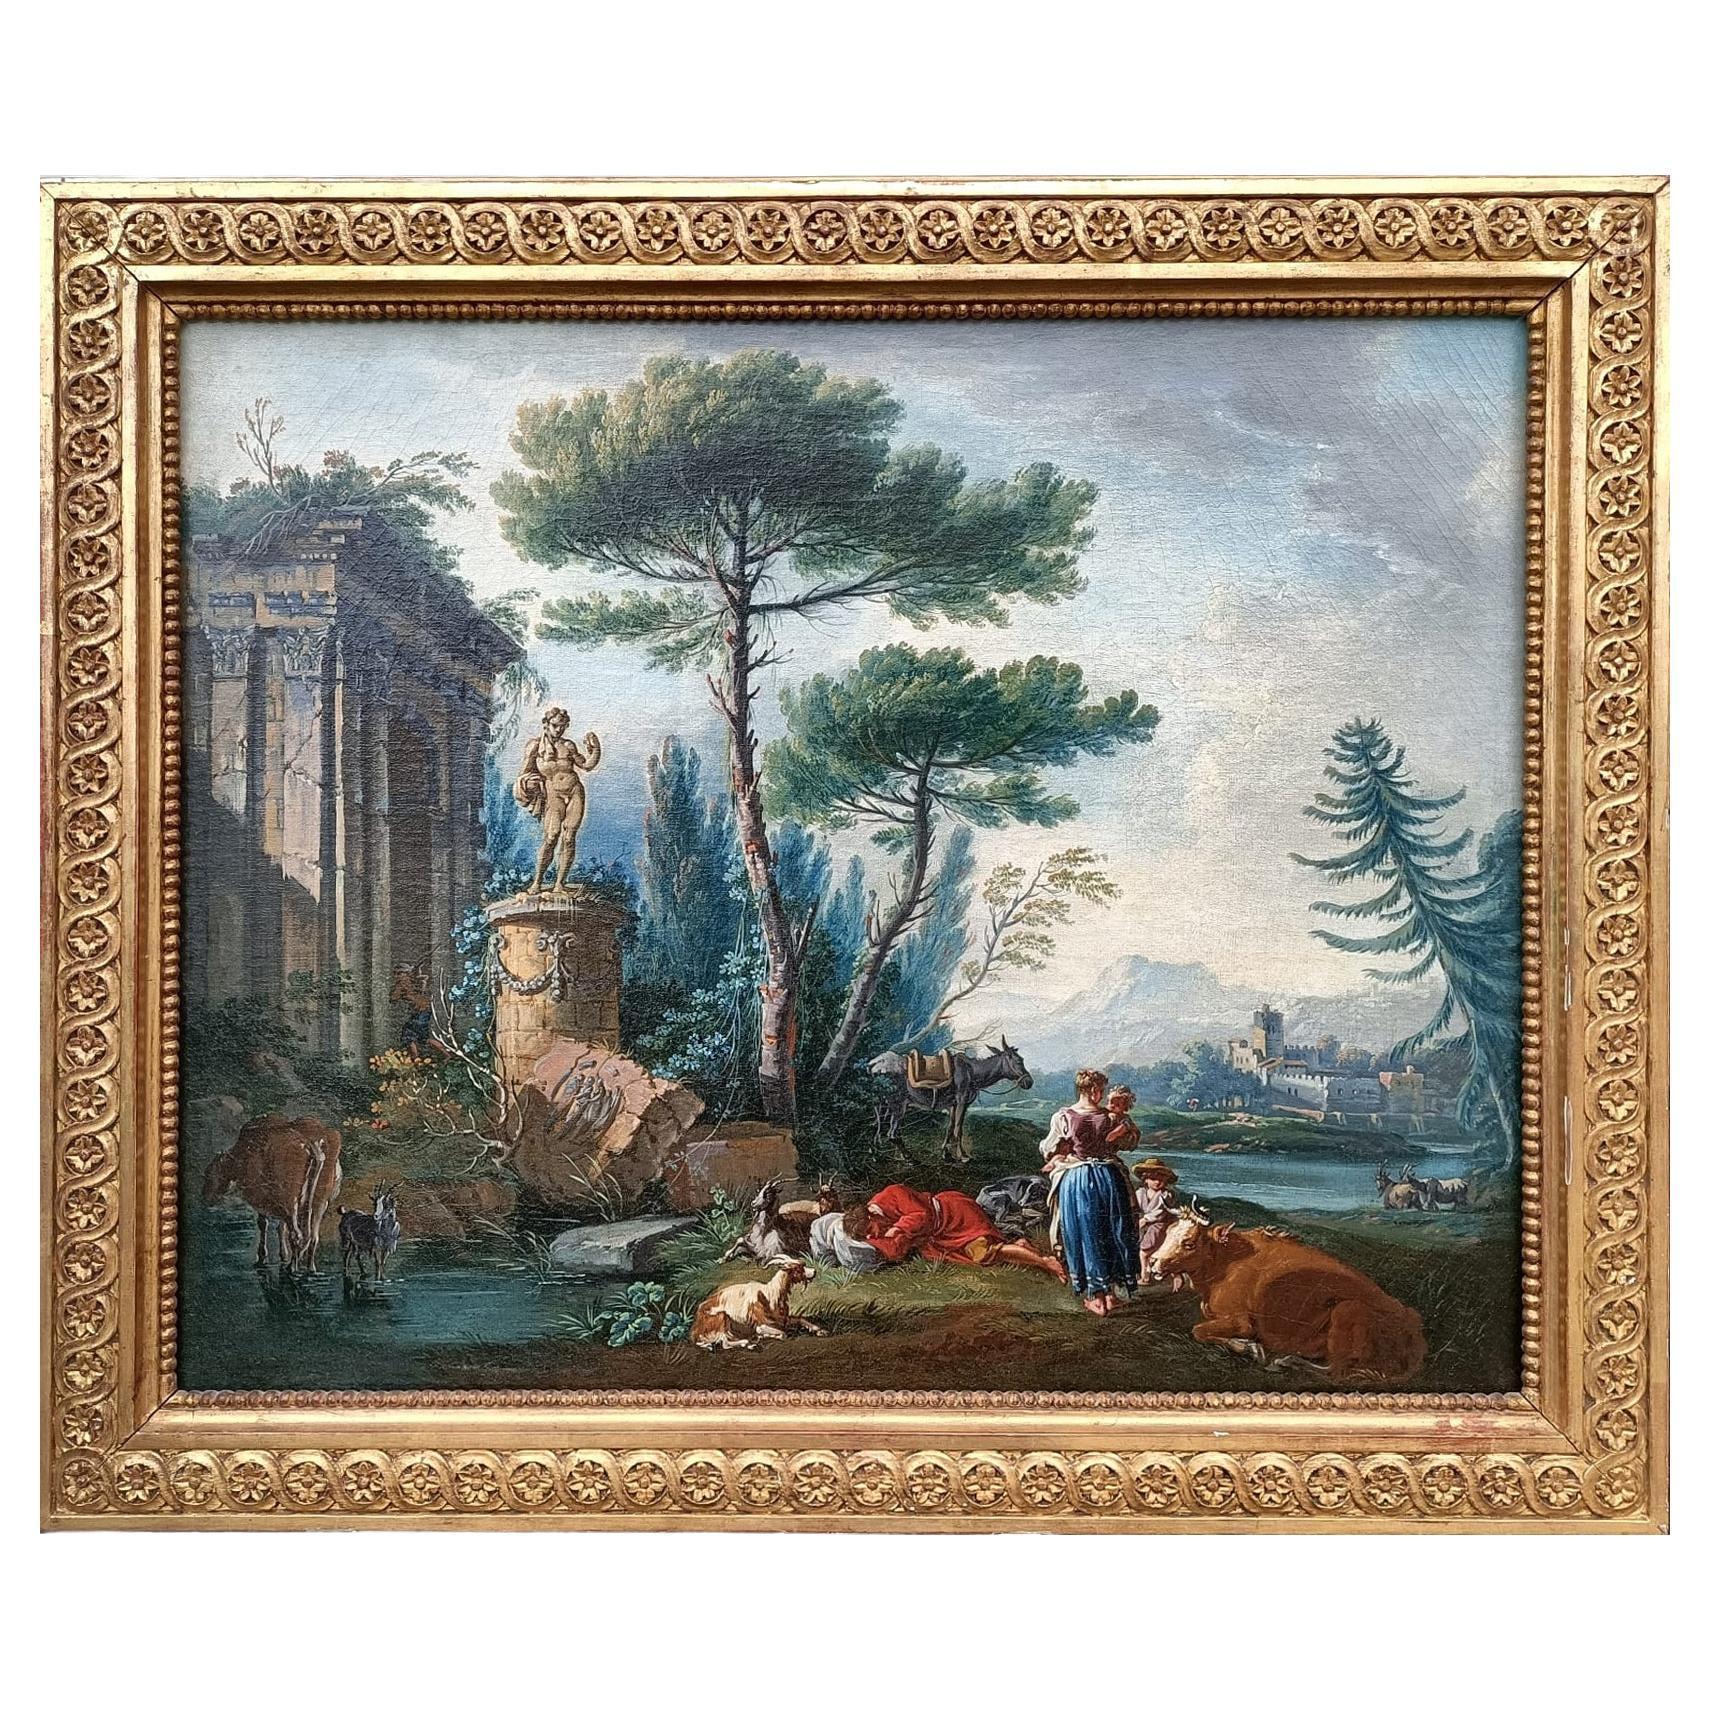 Peinture de paysage rural attribuée à J.B. Pillement, XVIIIe siècle